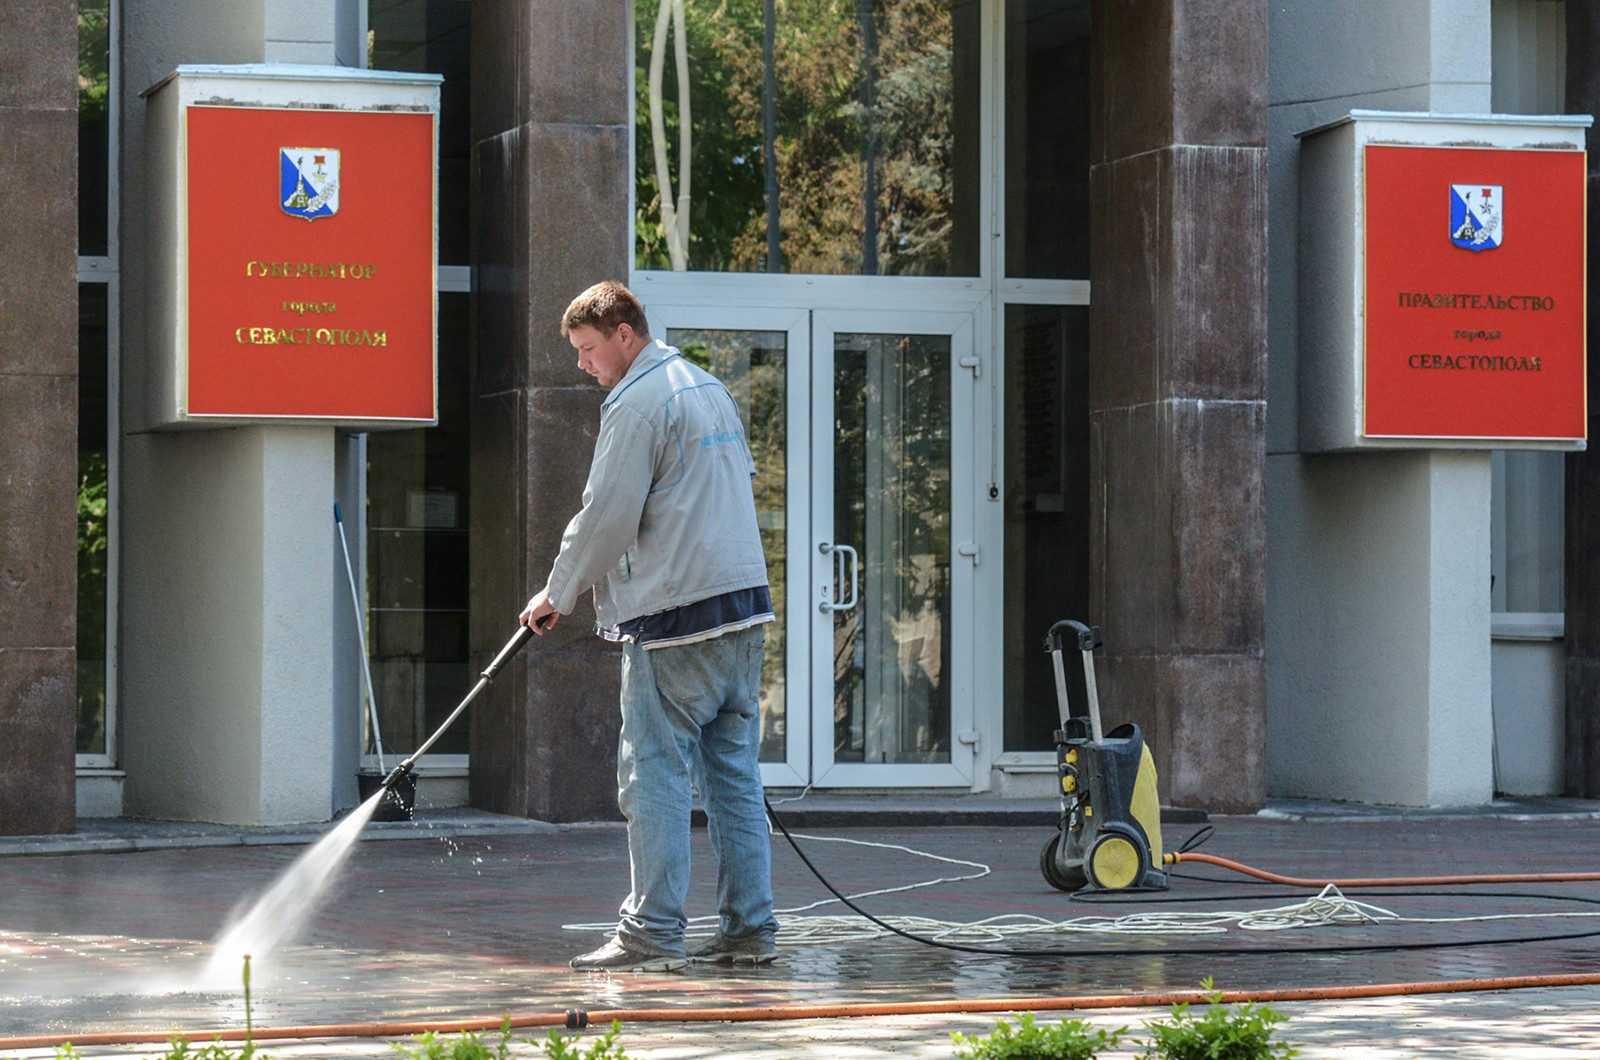 А сотрудники ЖКХ моют тротуары перед зданием городской администрации